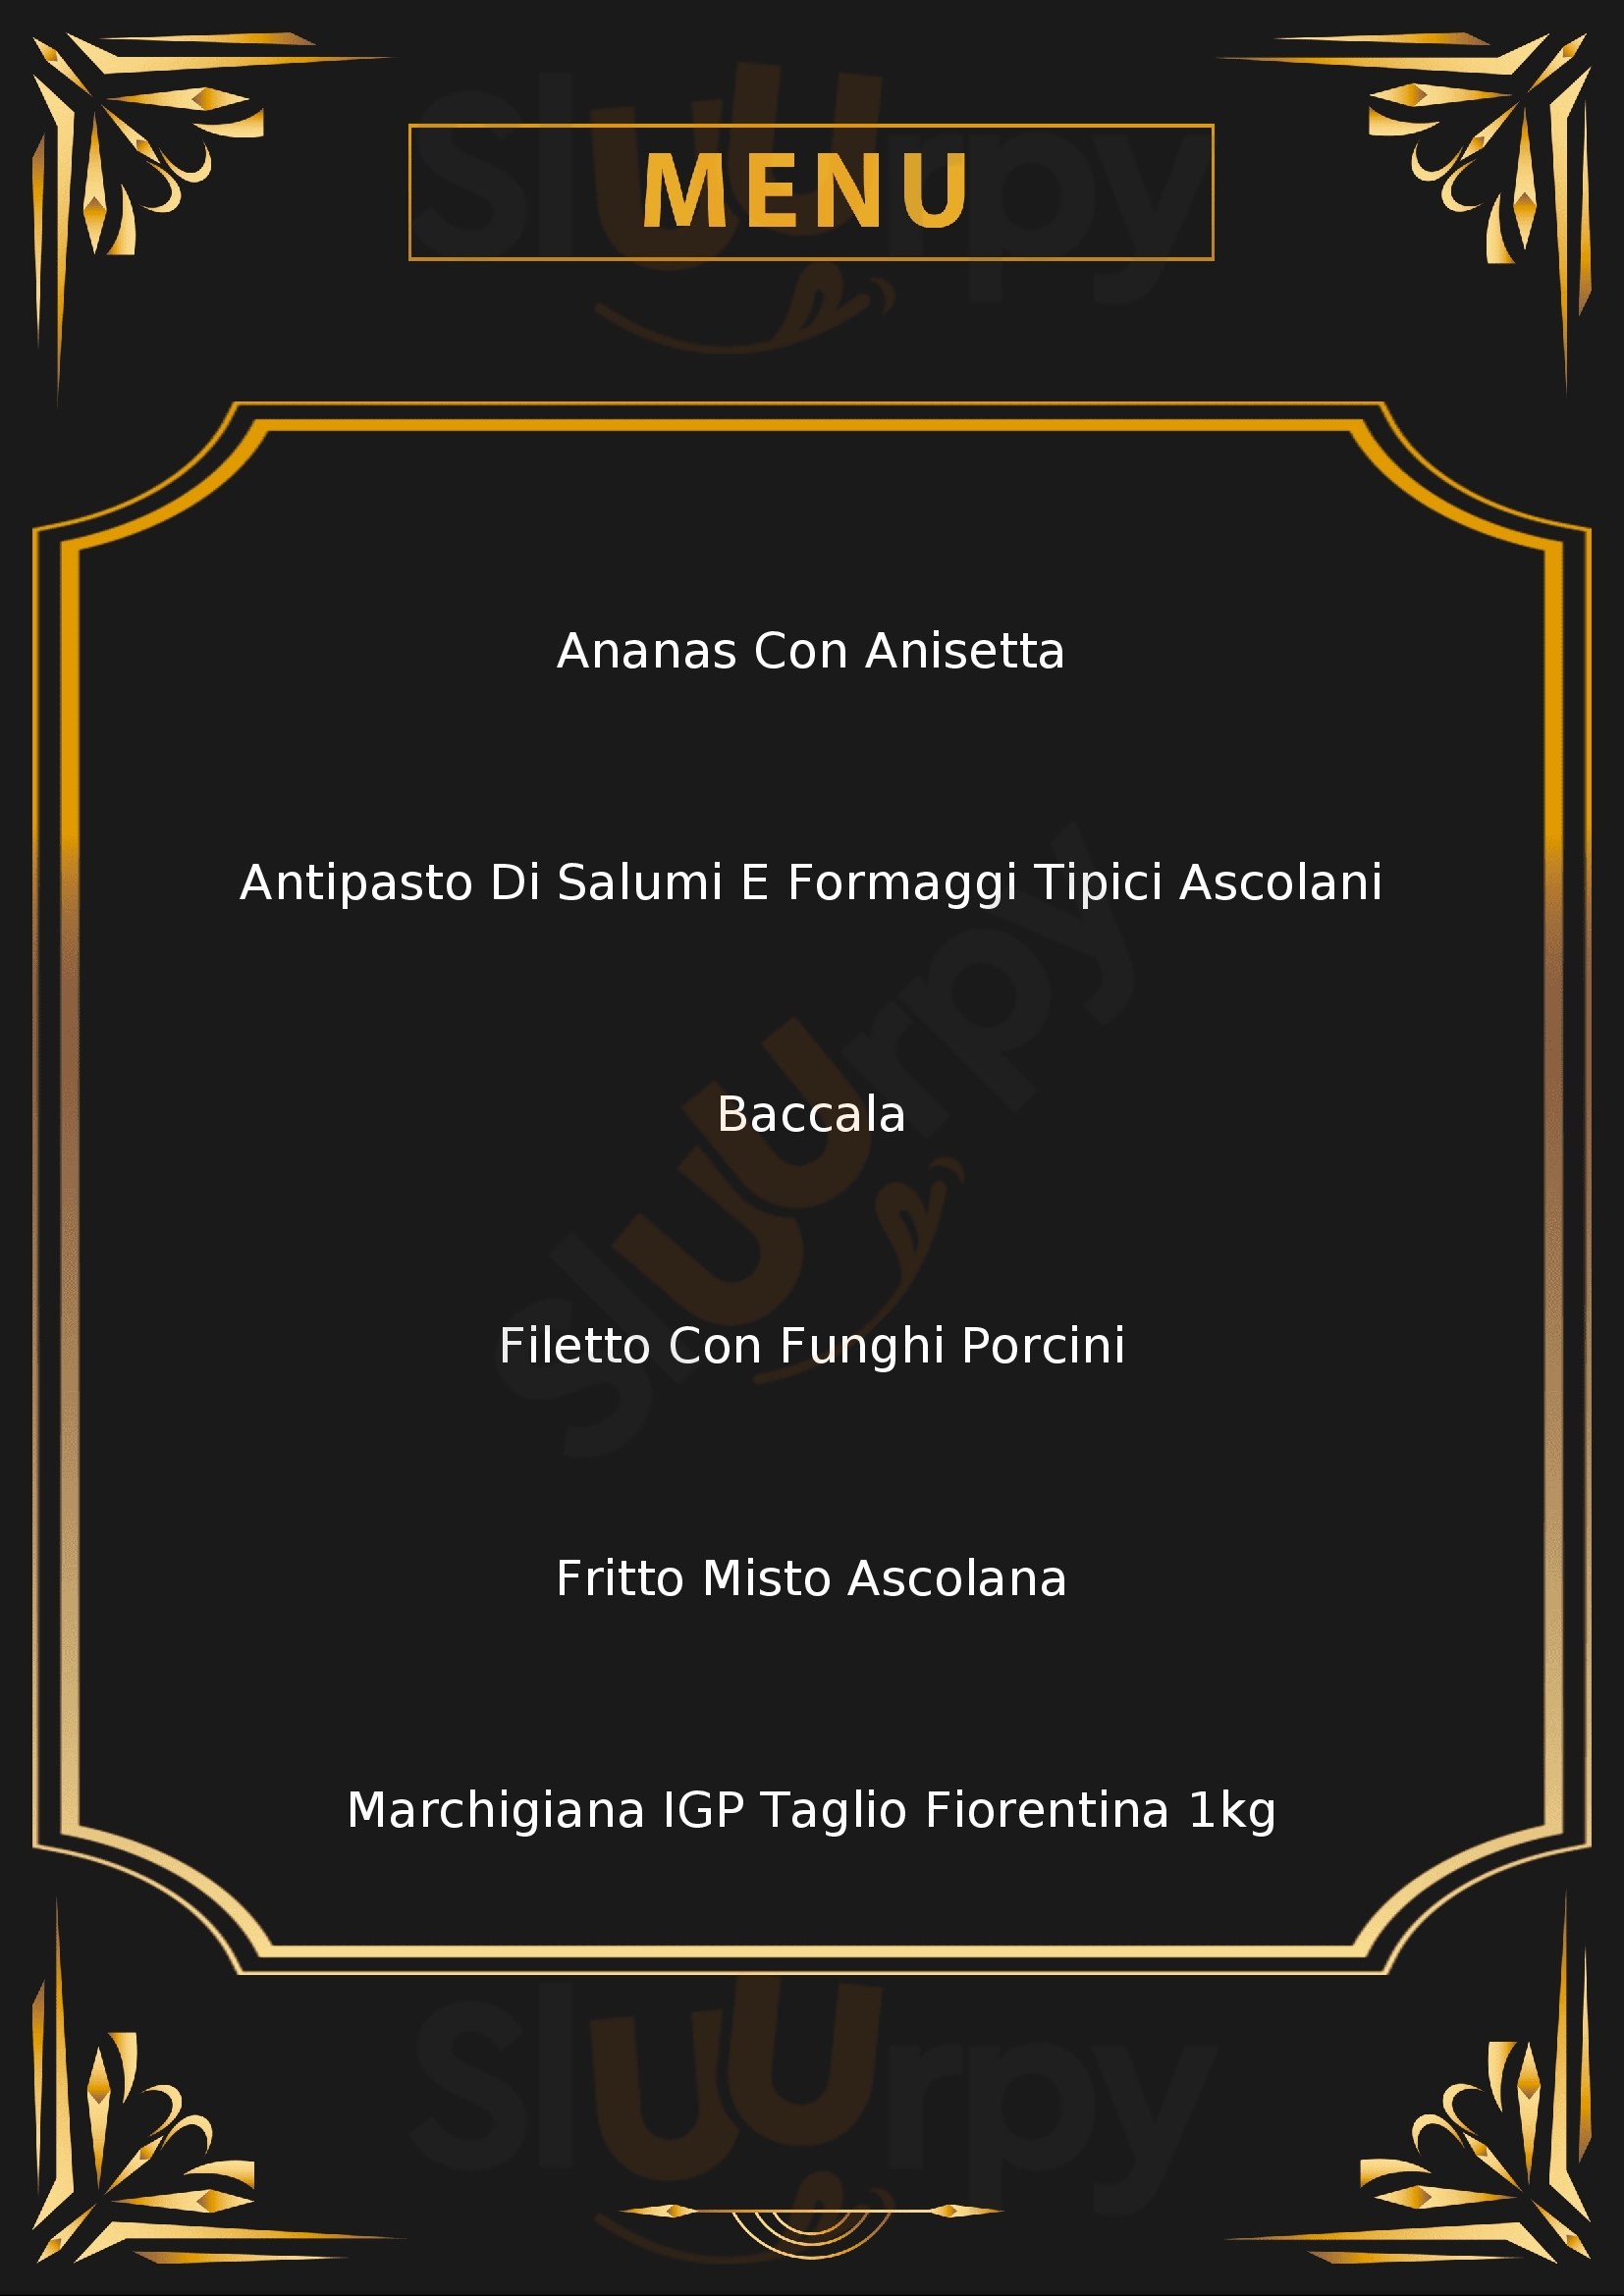 Mangiafuoco Ristorante Griglieria Ascoli Piceno menù 1 pagina